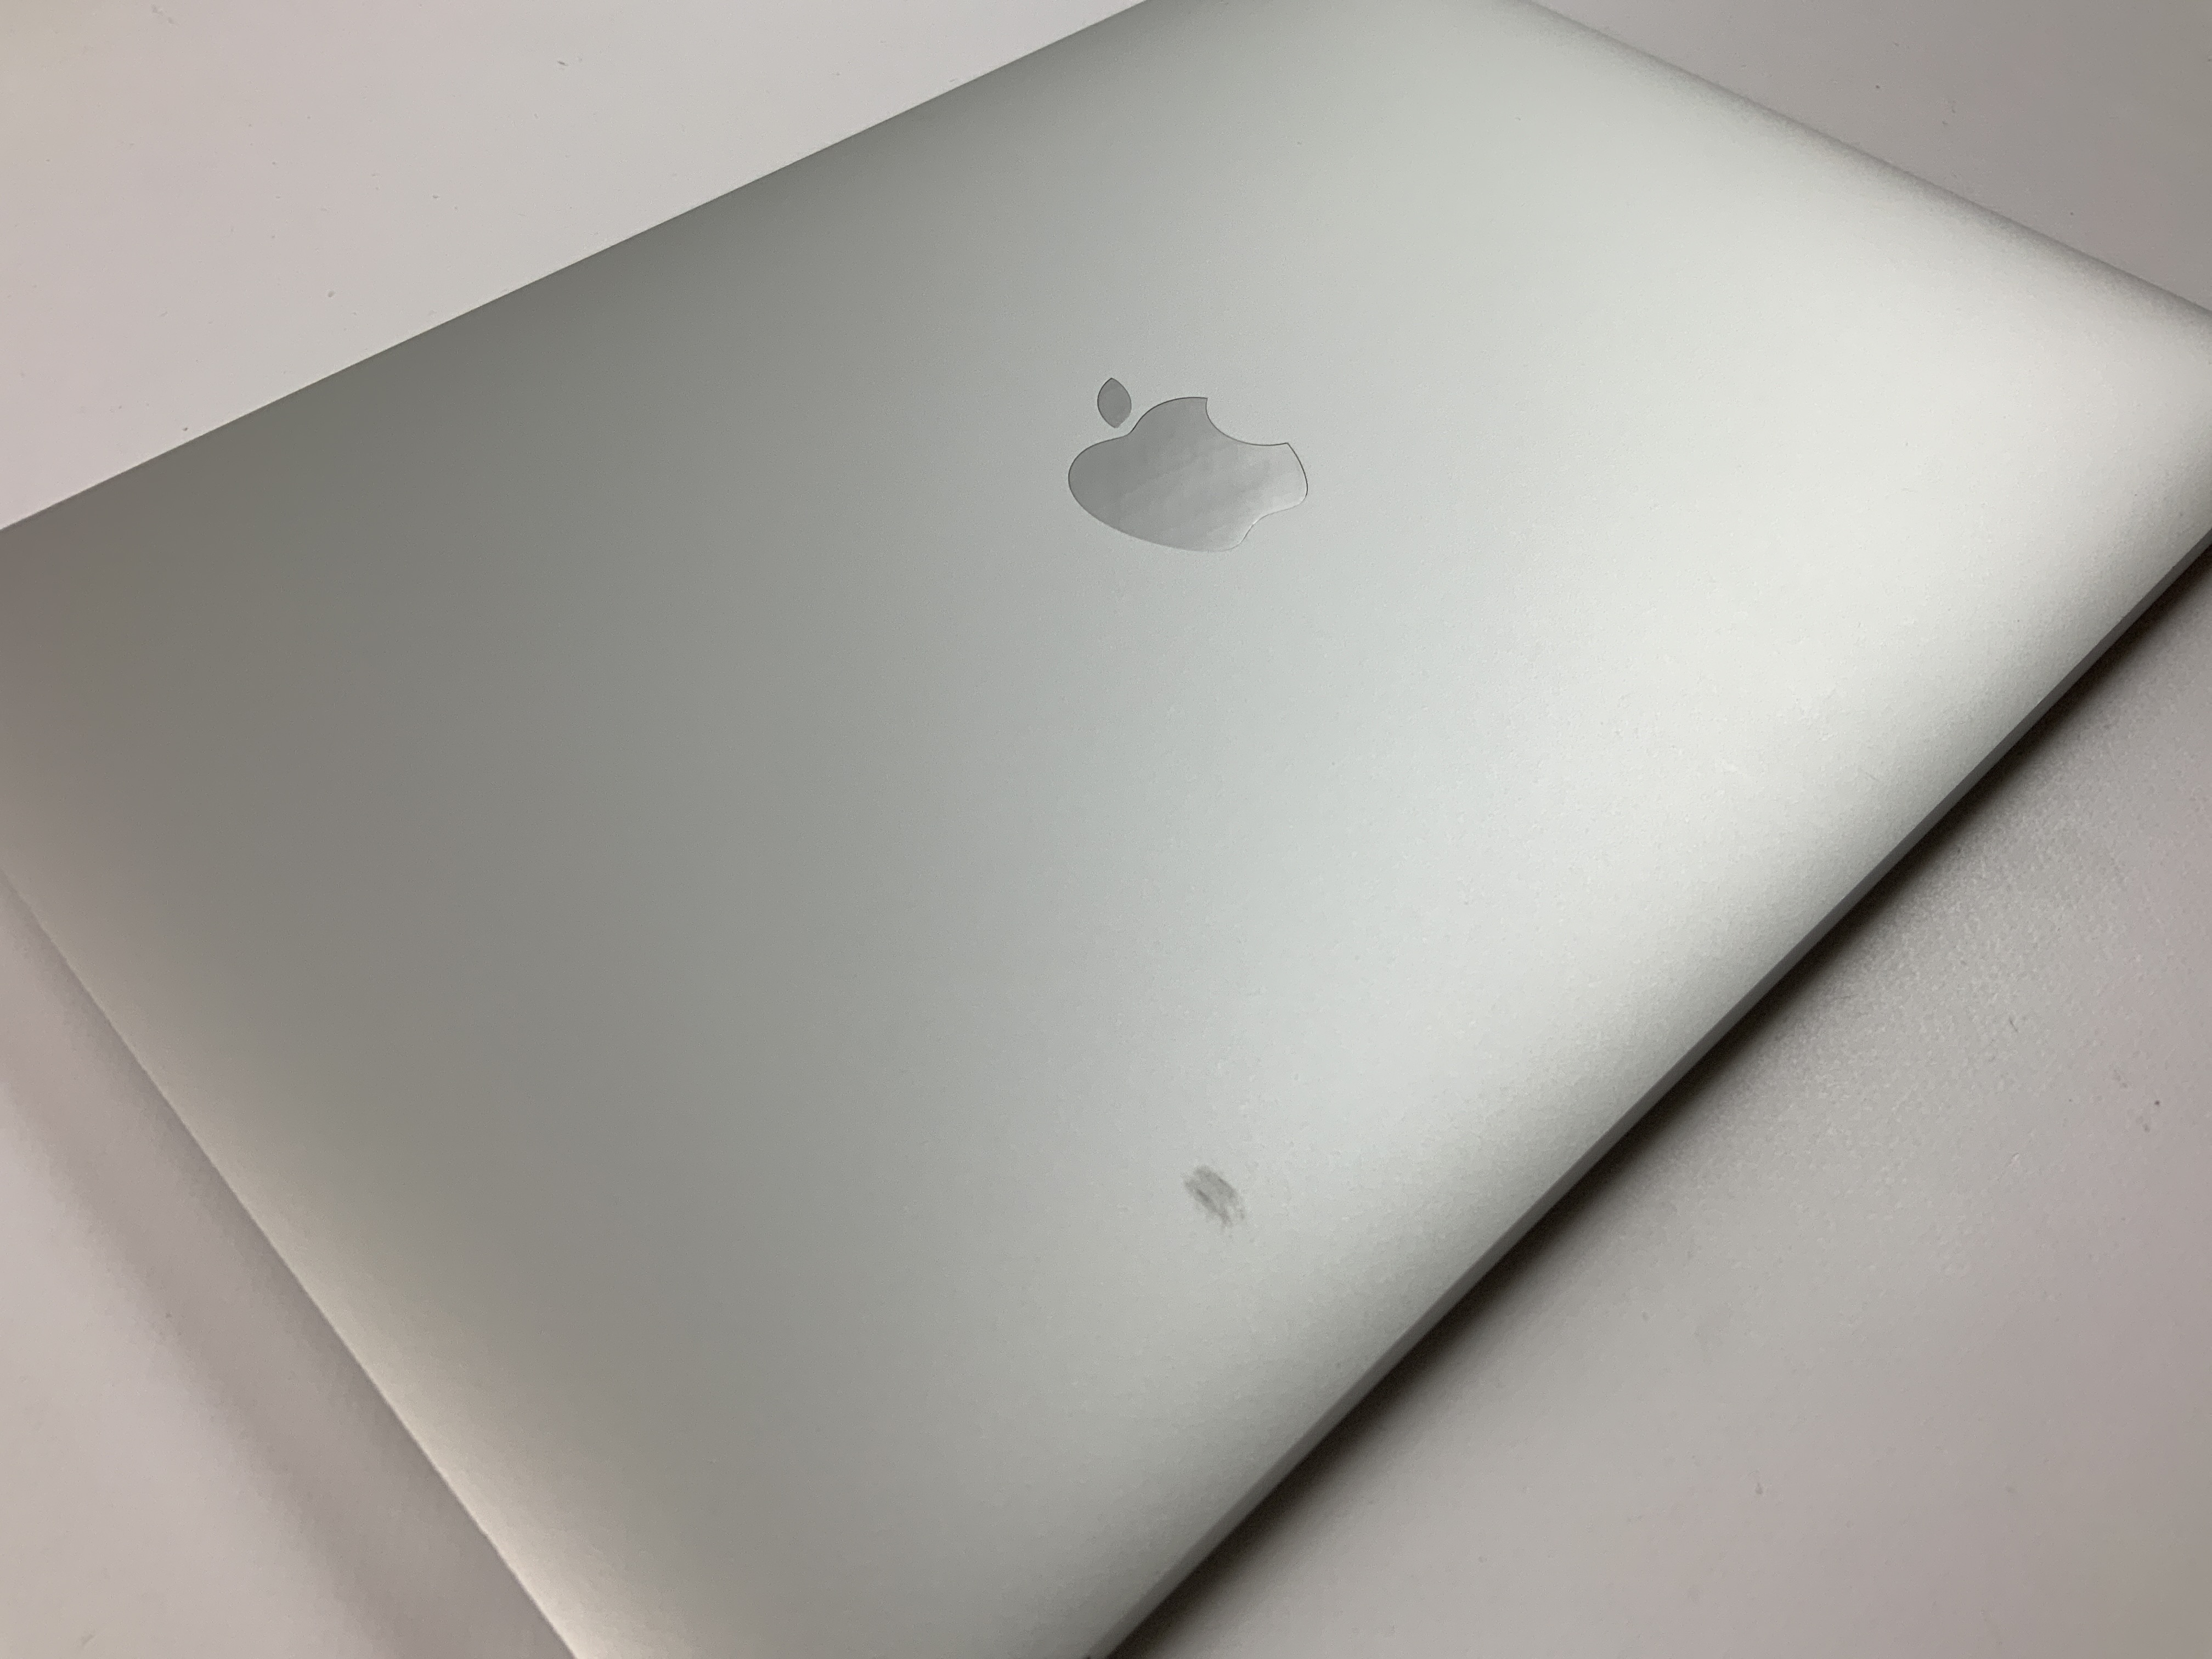 MacBook Pro 13" 4TBT Mid 2019 (Intel Quad-Core i5 2.4 GHz 16 GB RAM 256 GB SSD), Silver, Intel Quad-Core i5 2.4 GHz, 16 GB RAM, 256 GB SSD, imagen 5